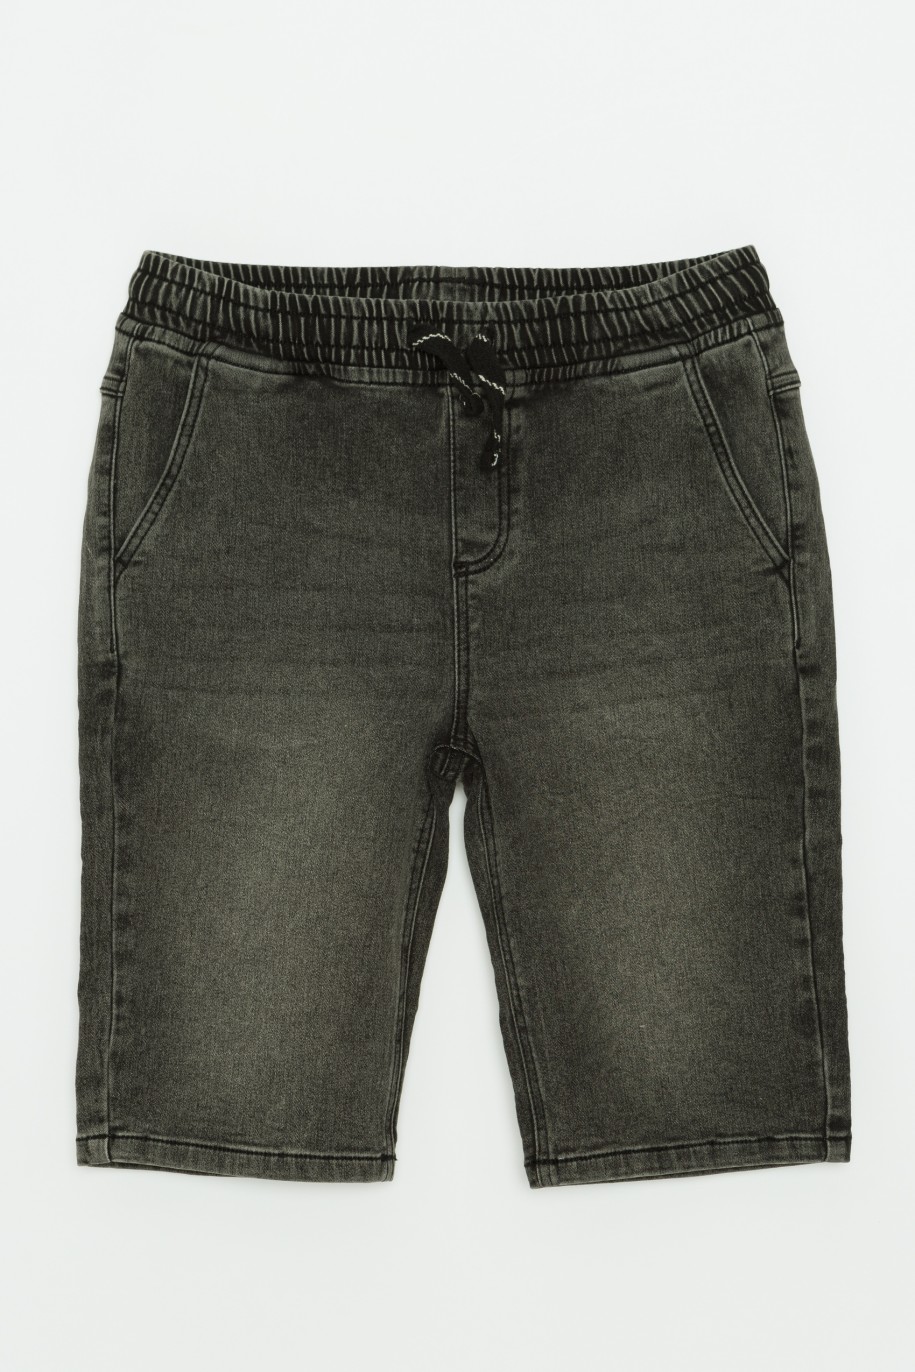 Krótkie szare jeansowe spodenki dla chłopaka - 41201